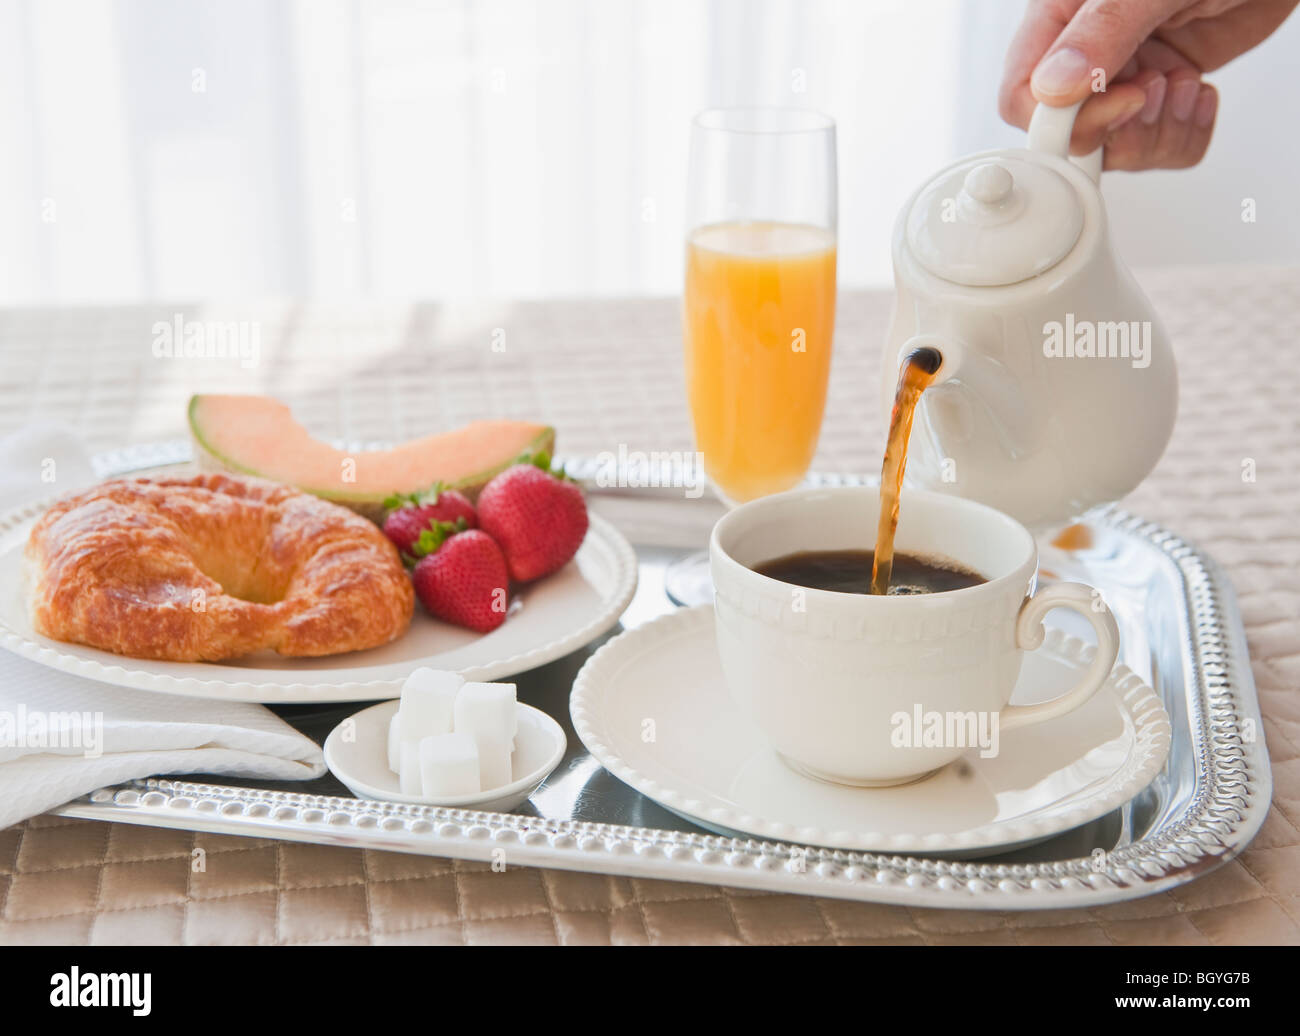 Breakfast tray Stock Photo